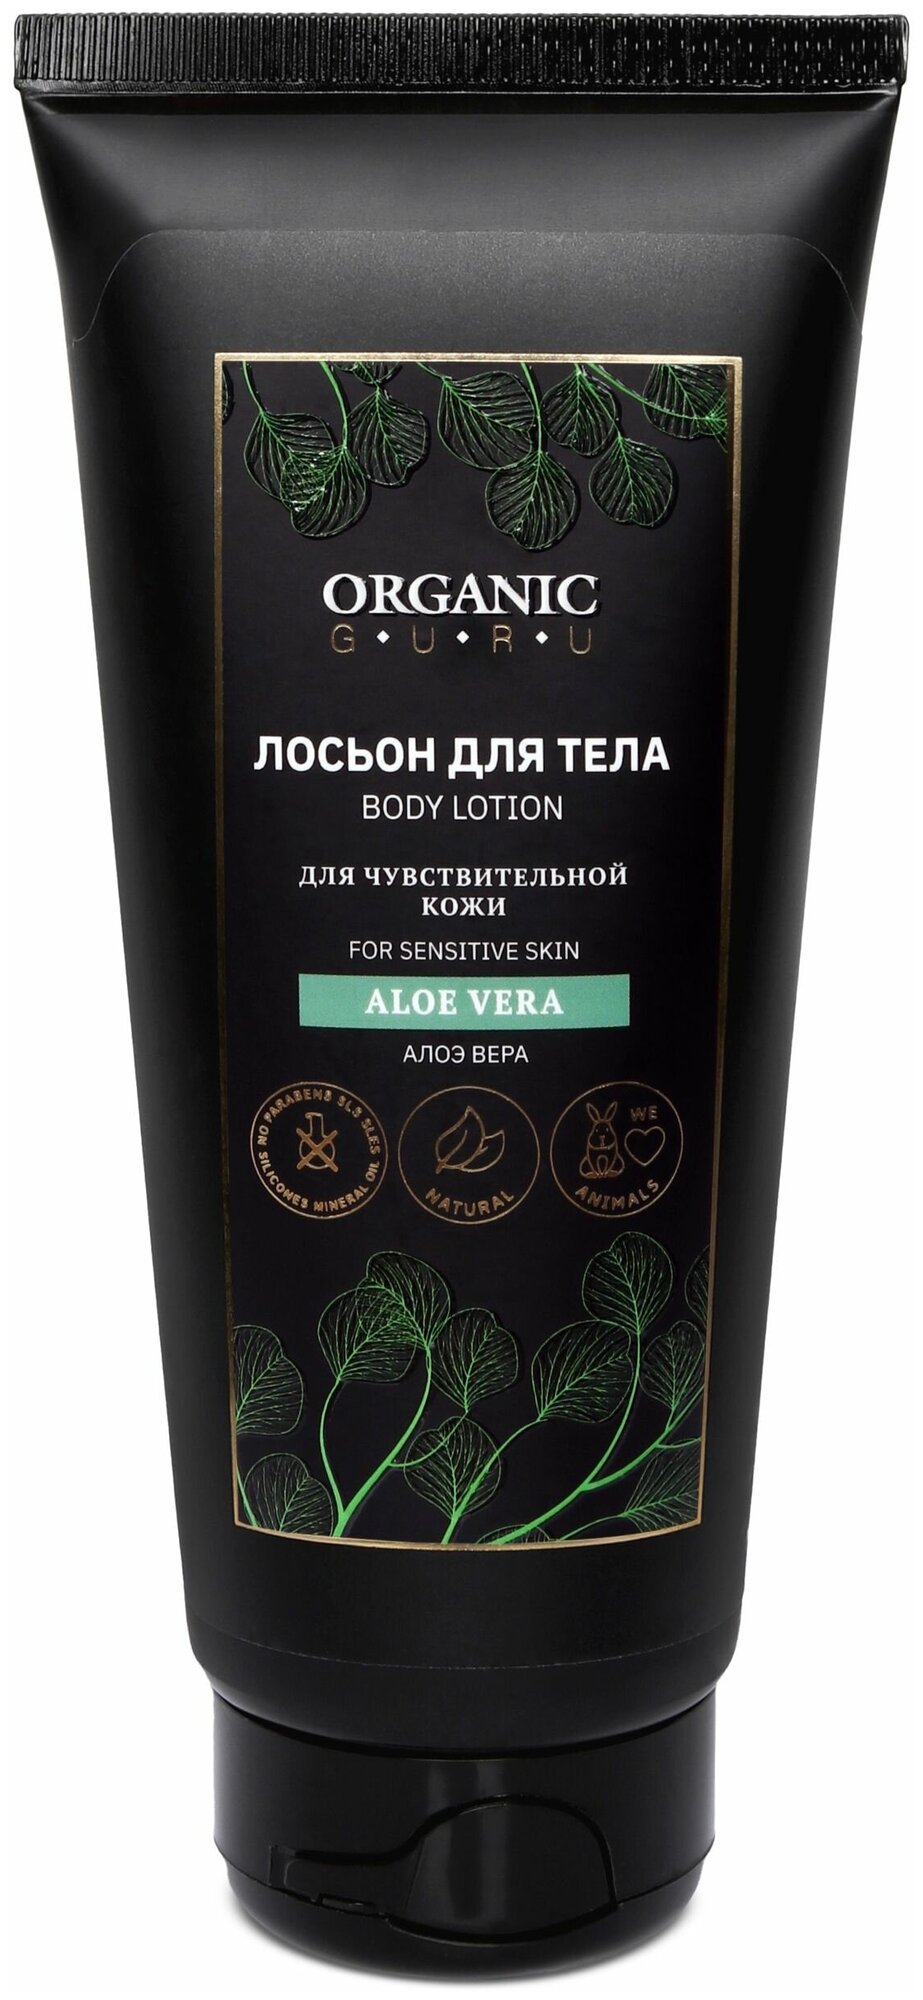 Organic Guru Лосьон для тела "Алоэ Вера" для чувствительной кожи, 200 мл. Лосьон увлажняющий "Aloe Vera" Органик Гуру